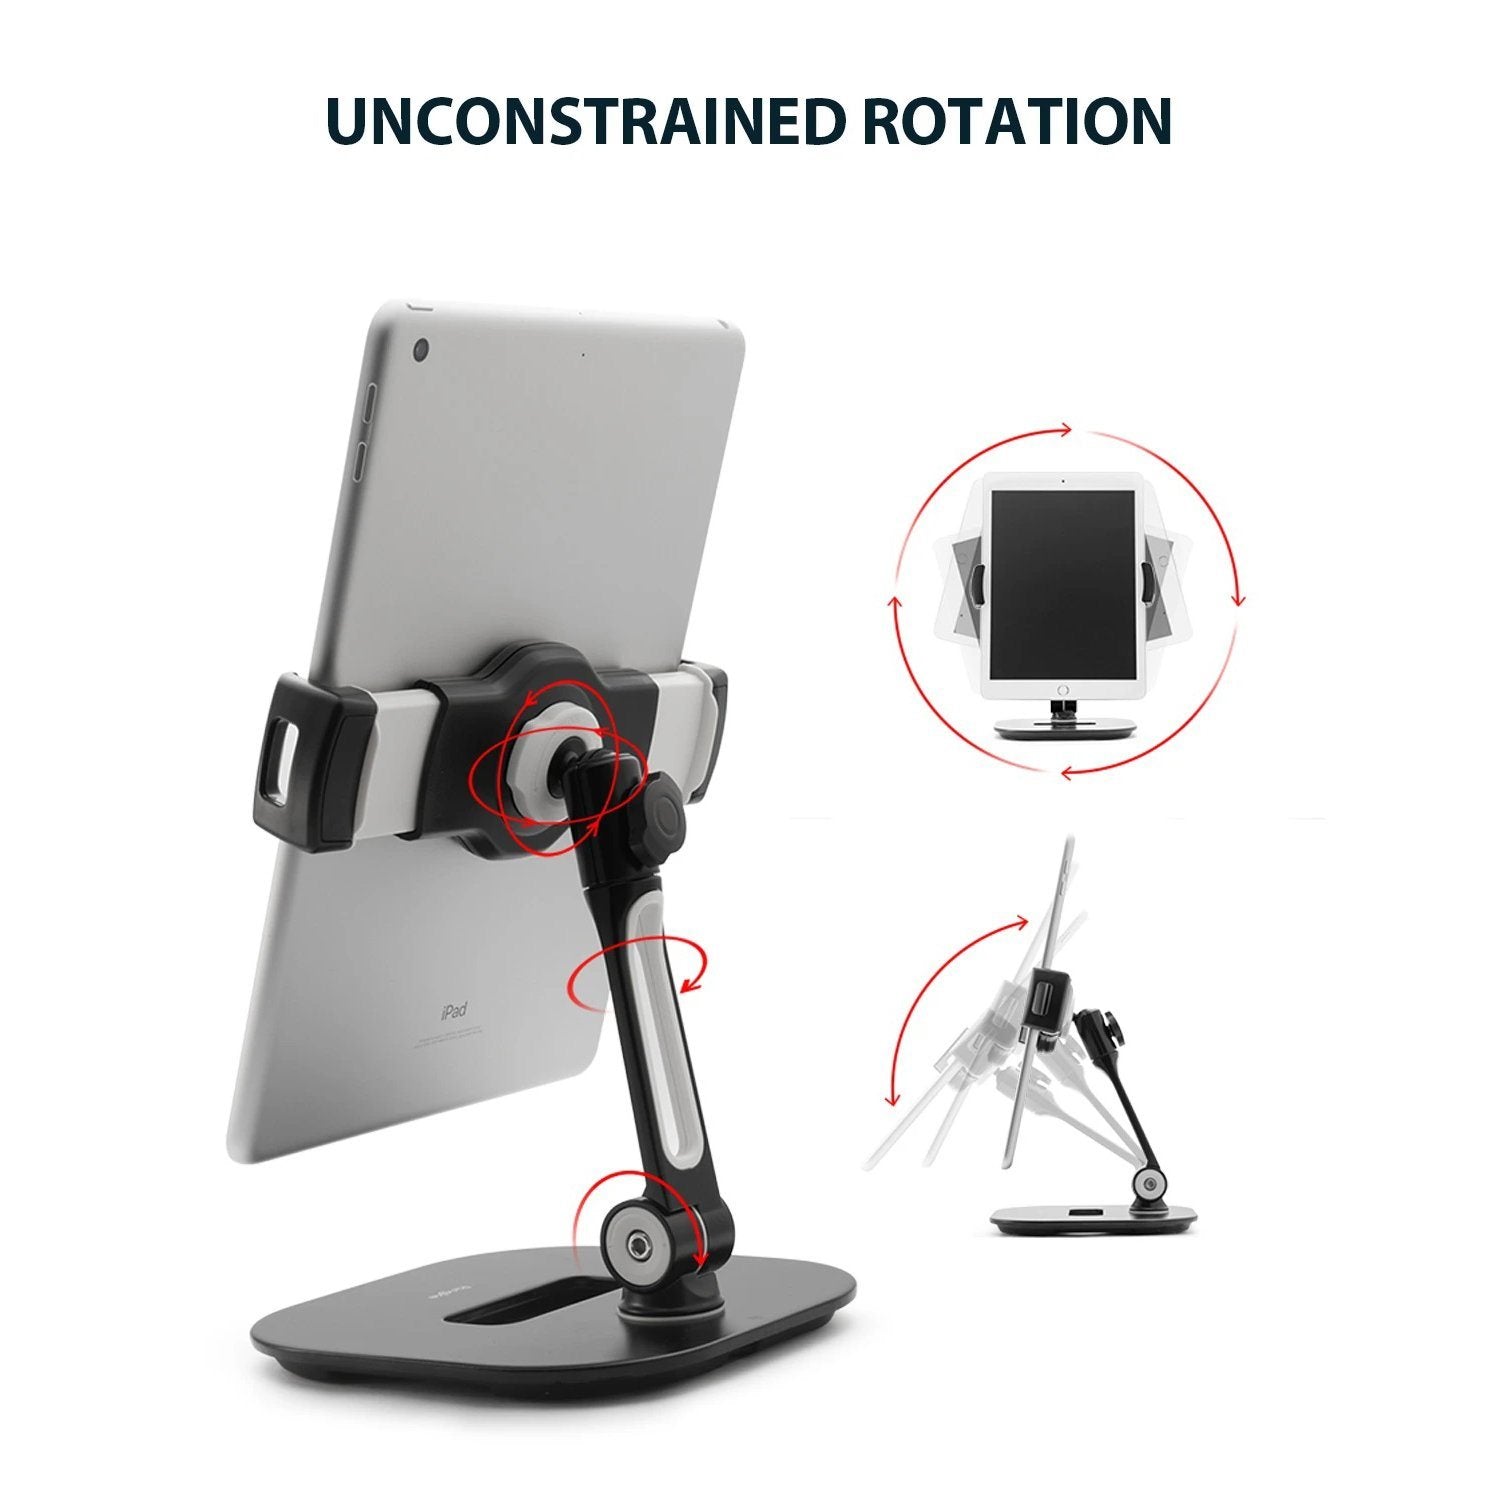 Ringke Iron Tablet Stand, Black Default Ringke 